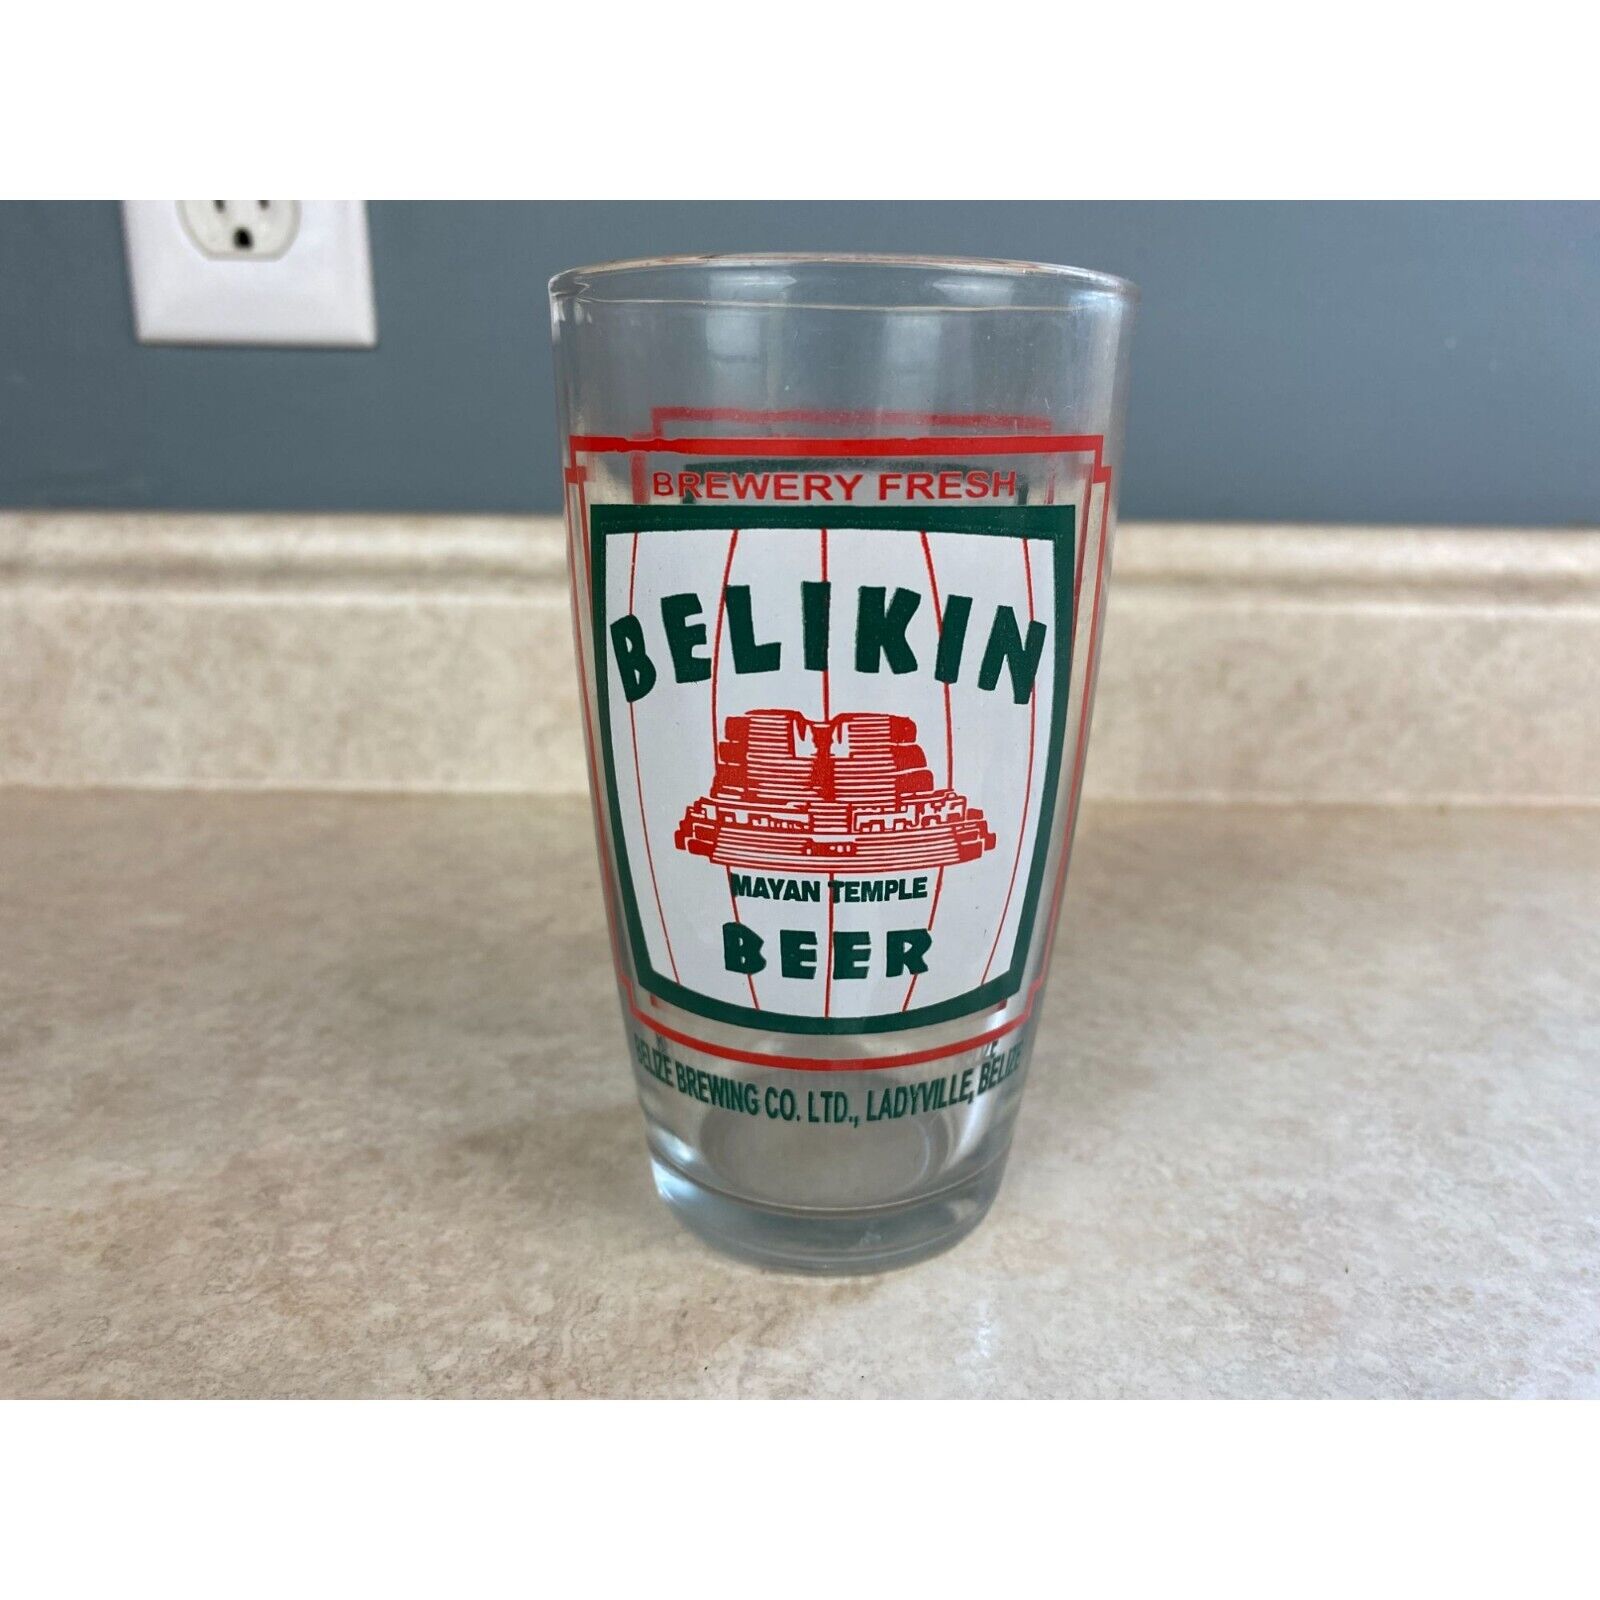 Belize Brewing Co. Belkin Beer 10oz Beer Glass